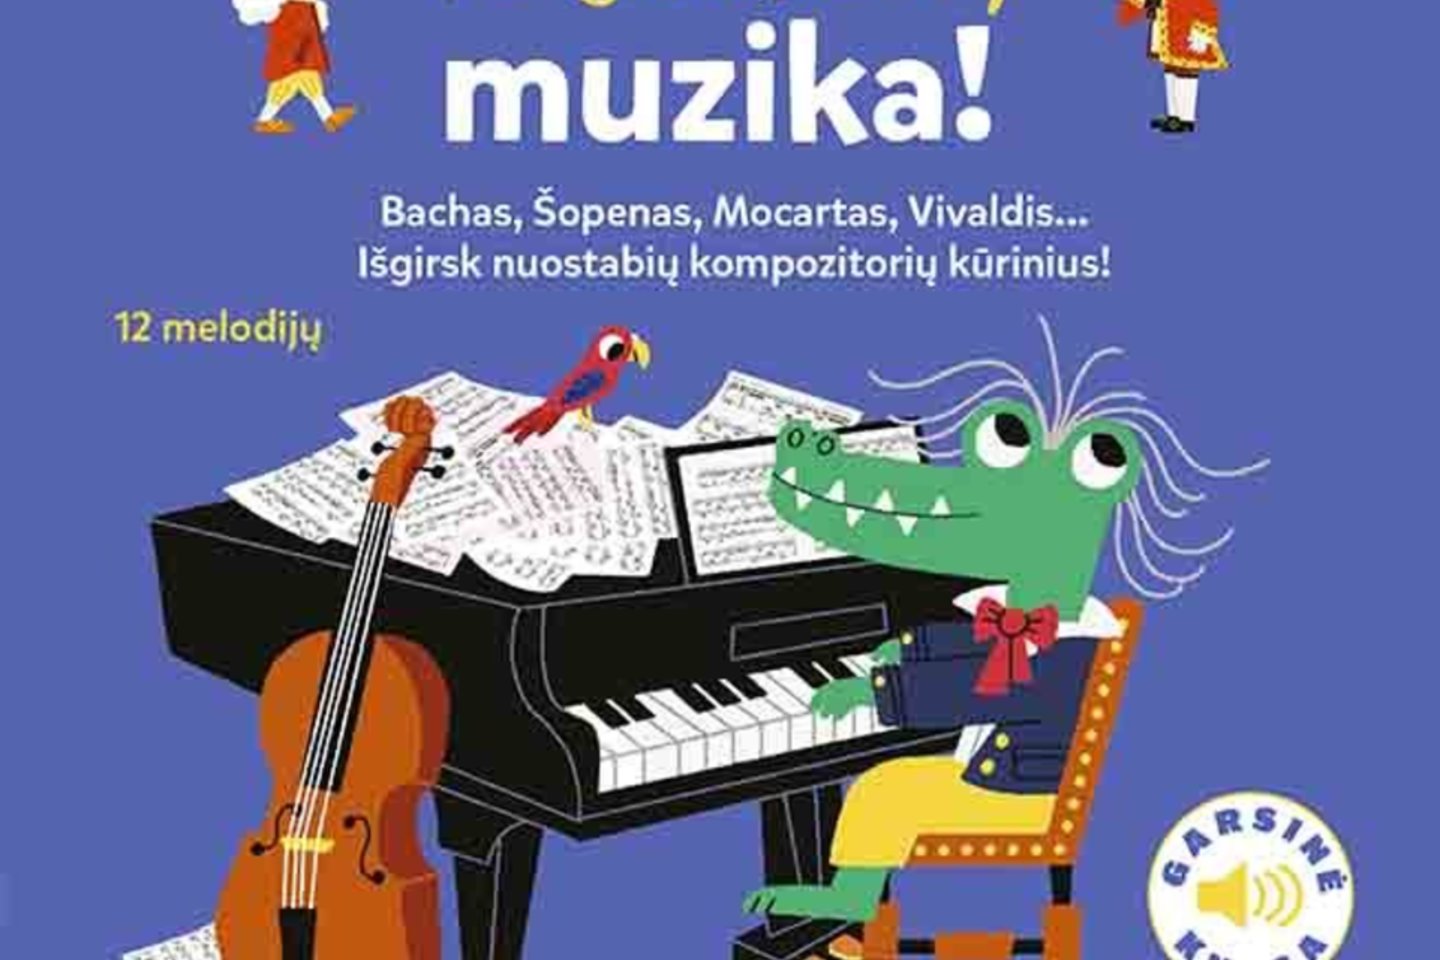  Nuostabi Antonijaus Vivaldžio muzika specialiai mažiems pirščiukams<br> Pranešimo spaudai nuotr.